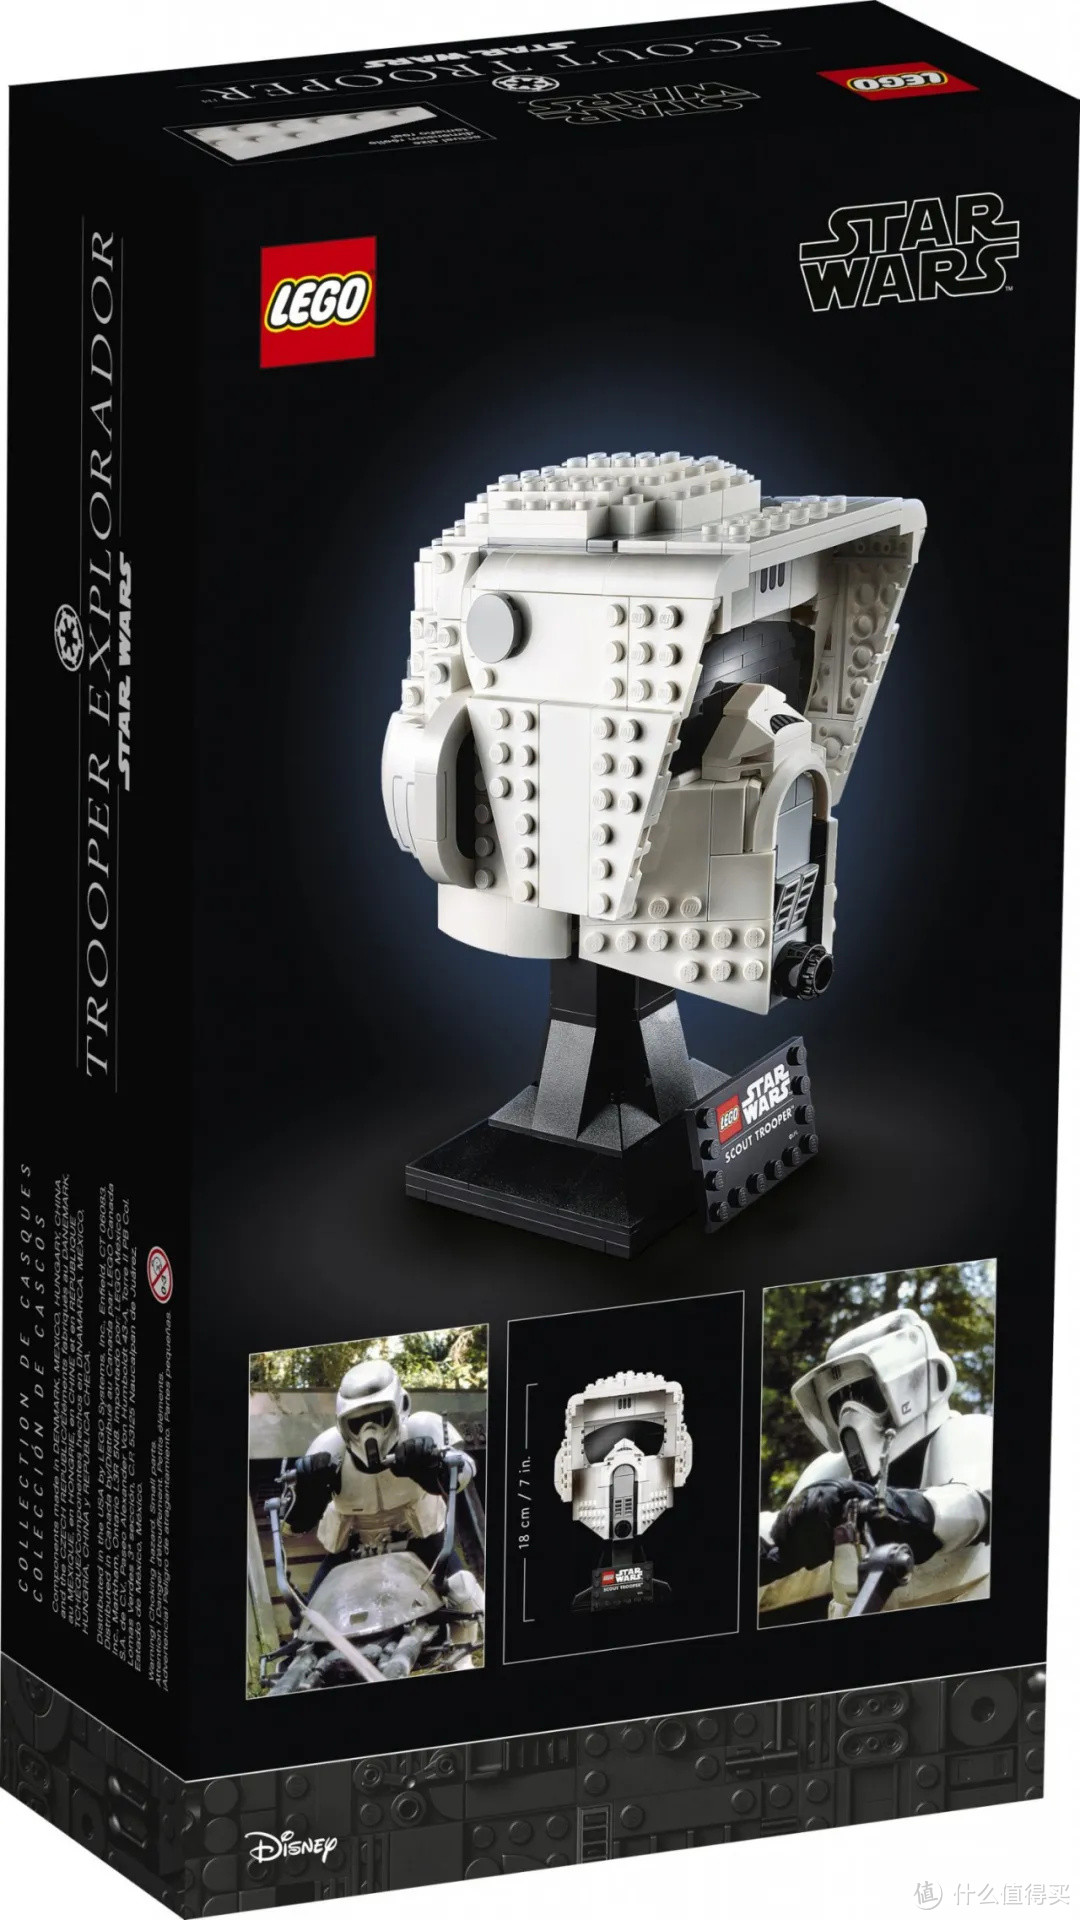 乐高星球大战两款新头雕套装和75306帝国探测机器人官图曝光